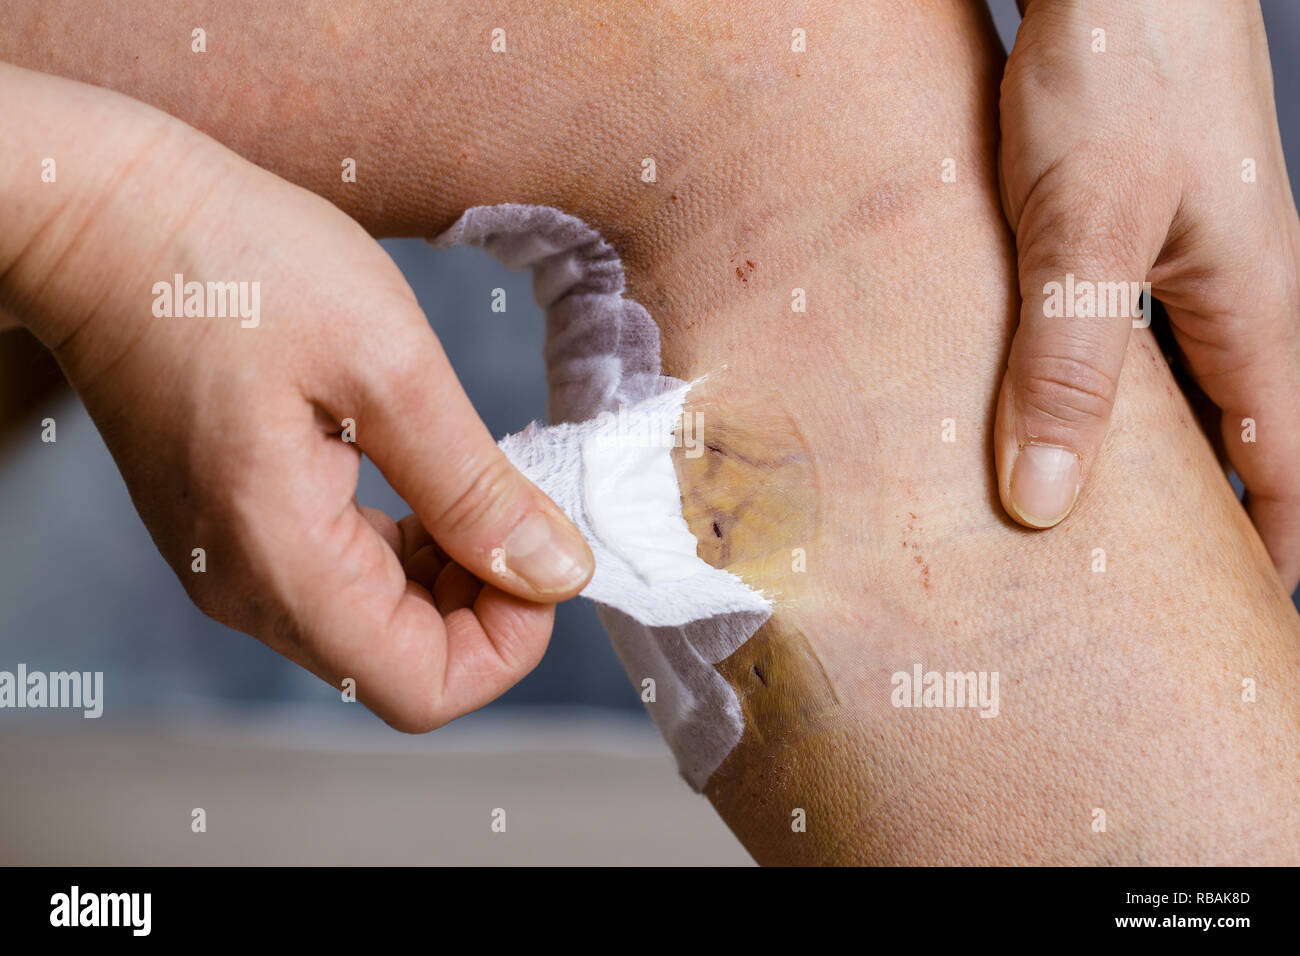 Woman bandages et l'inspection de sa jambe après chirurgie des varices, avec blessures visibles. Le traitement curatif, procédures esthétiques, thrombose Banque D'Images